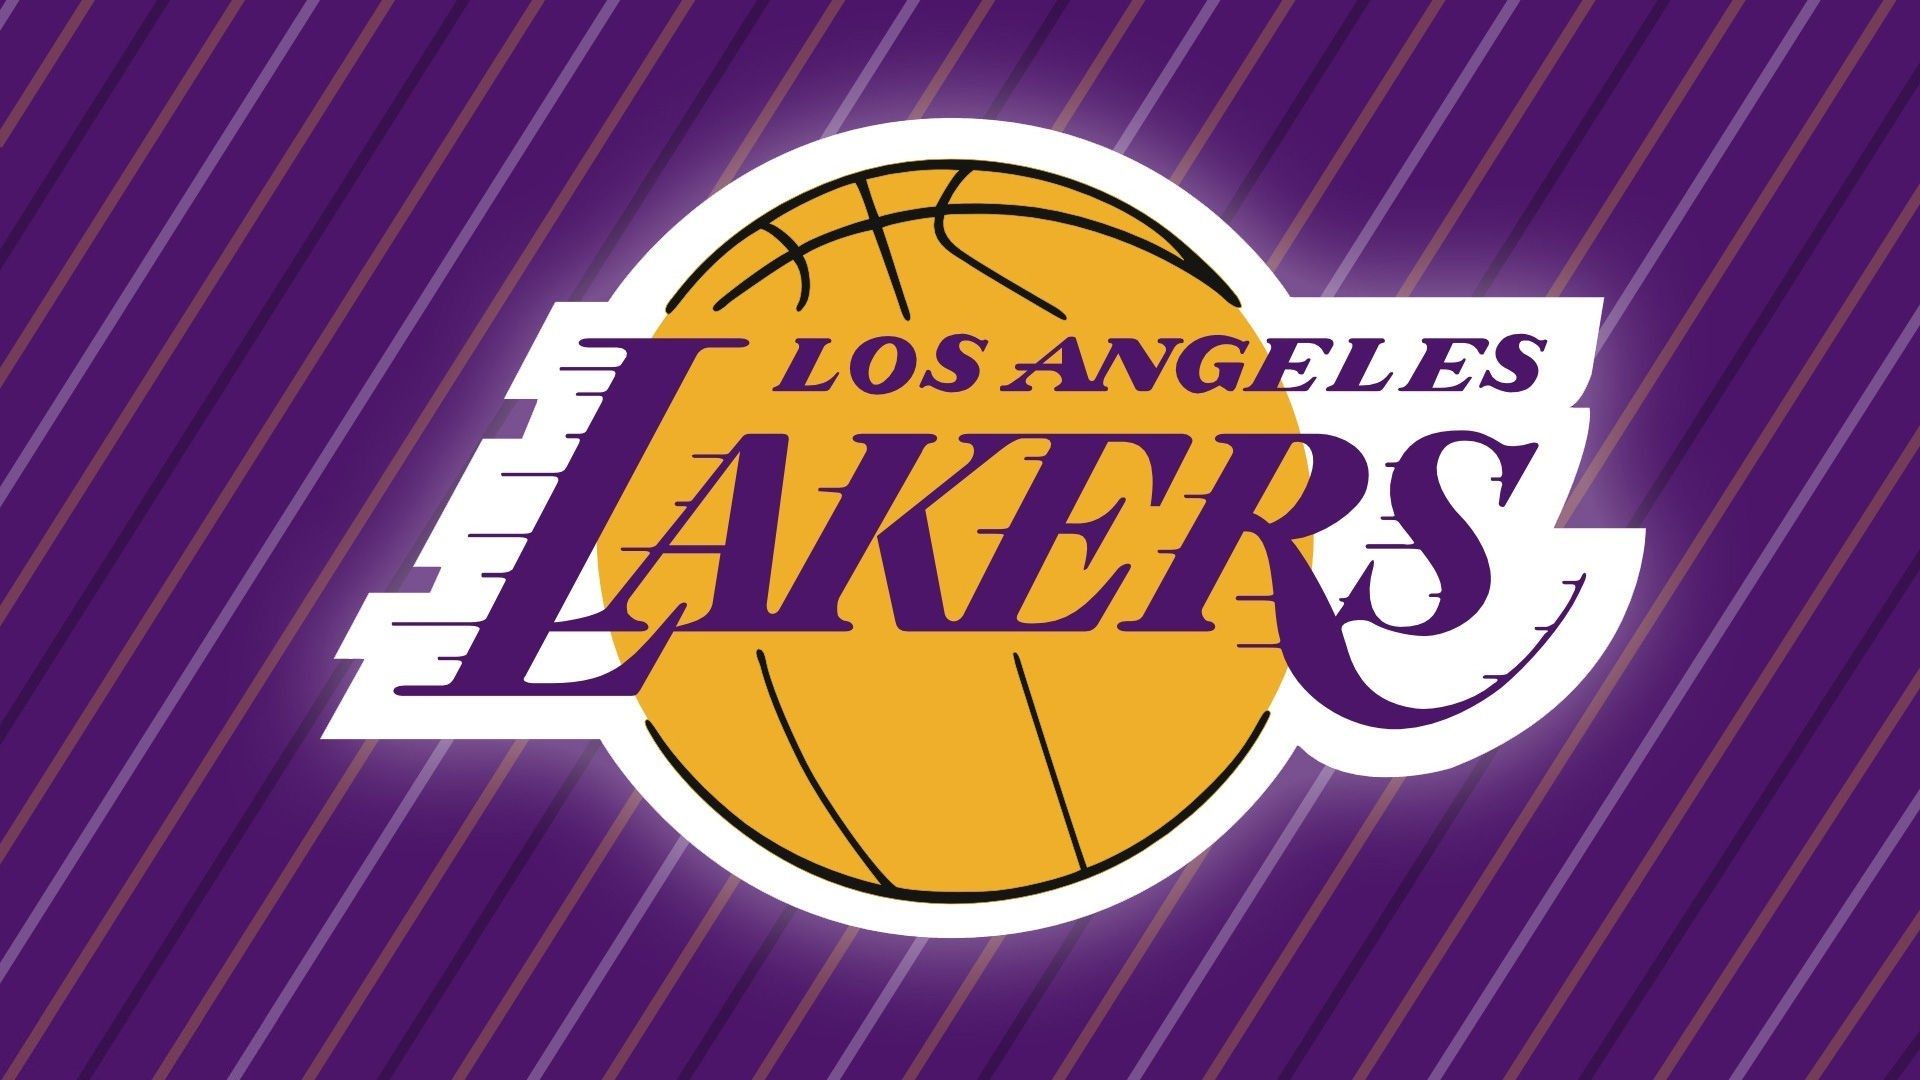 LOS ANGELES LAKERS DESKTOP WALLPAPER. Lakers logo, Los angeles lakers, Lakers vs